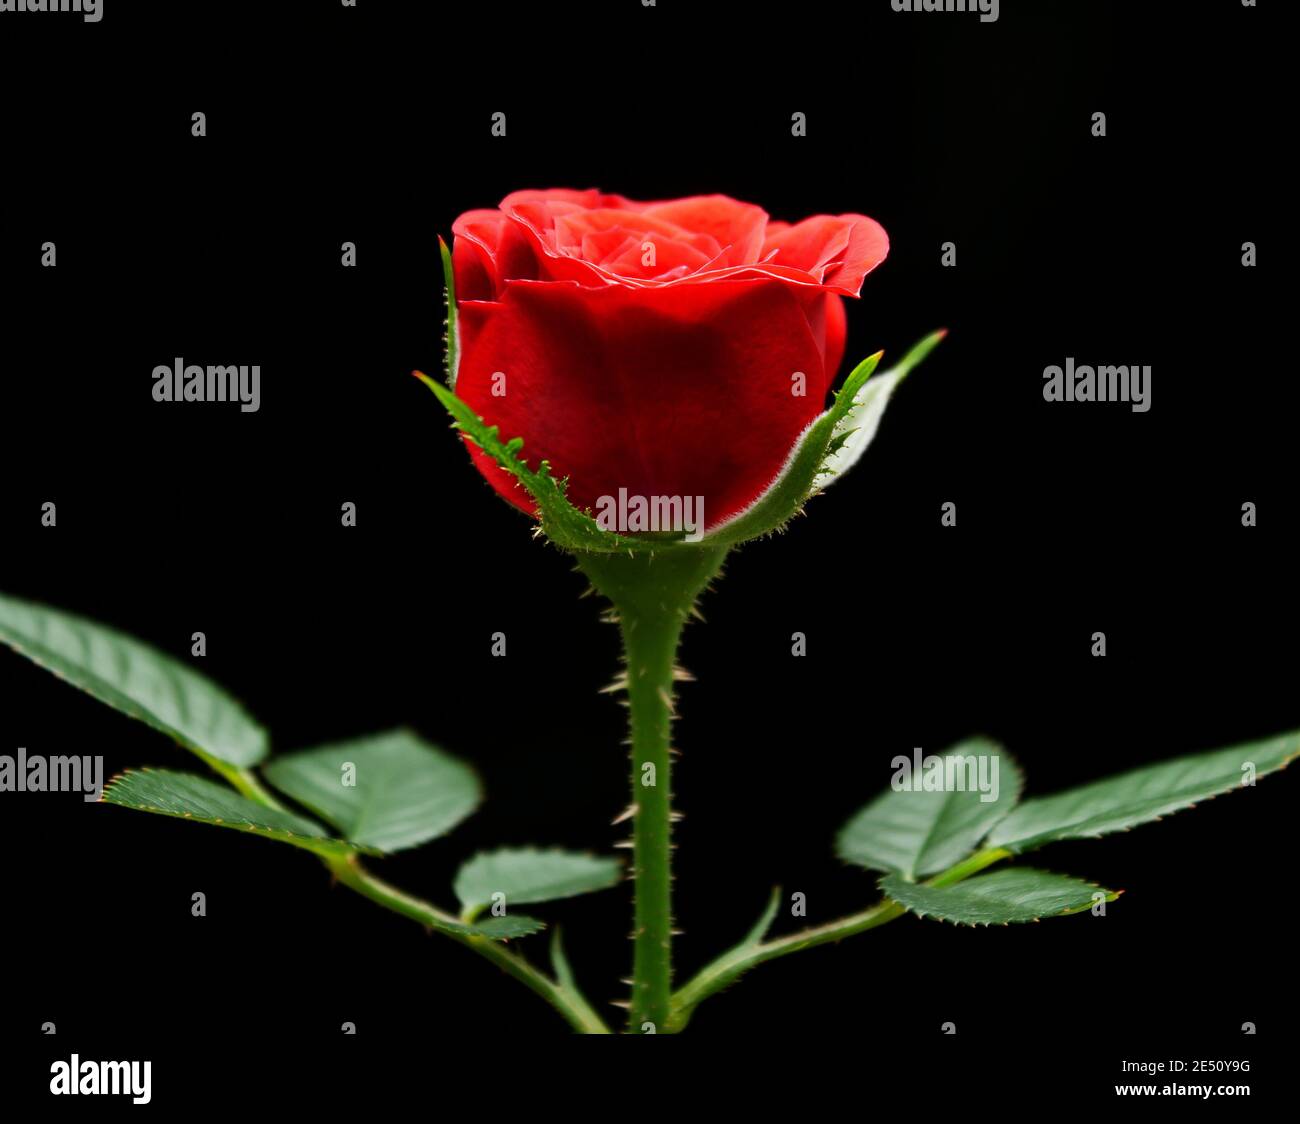 Rose rouge sur fond noir, CopySpace, thème romantik, belle fleur fraîche, symbole d'amour, Blossom de roses rouges Banque D'Images